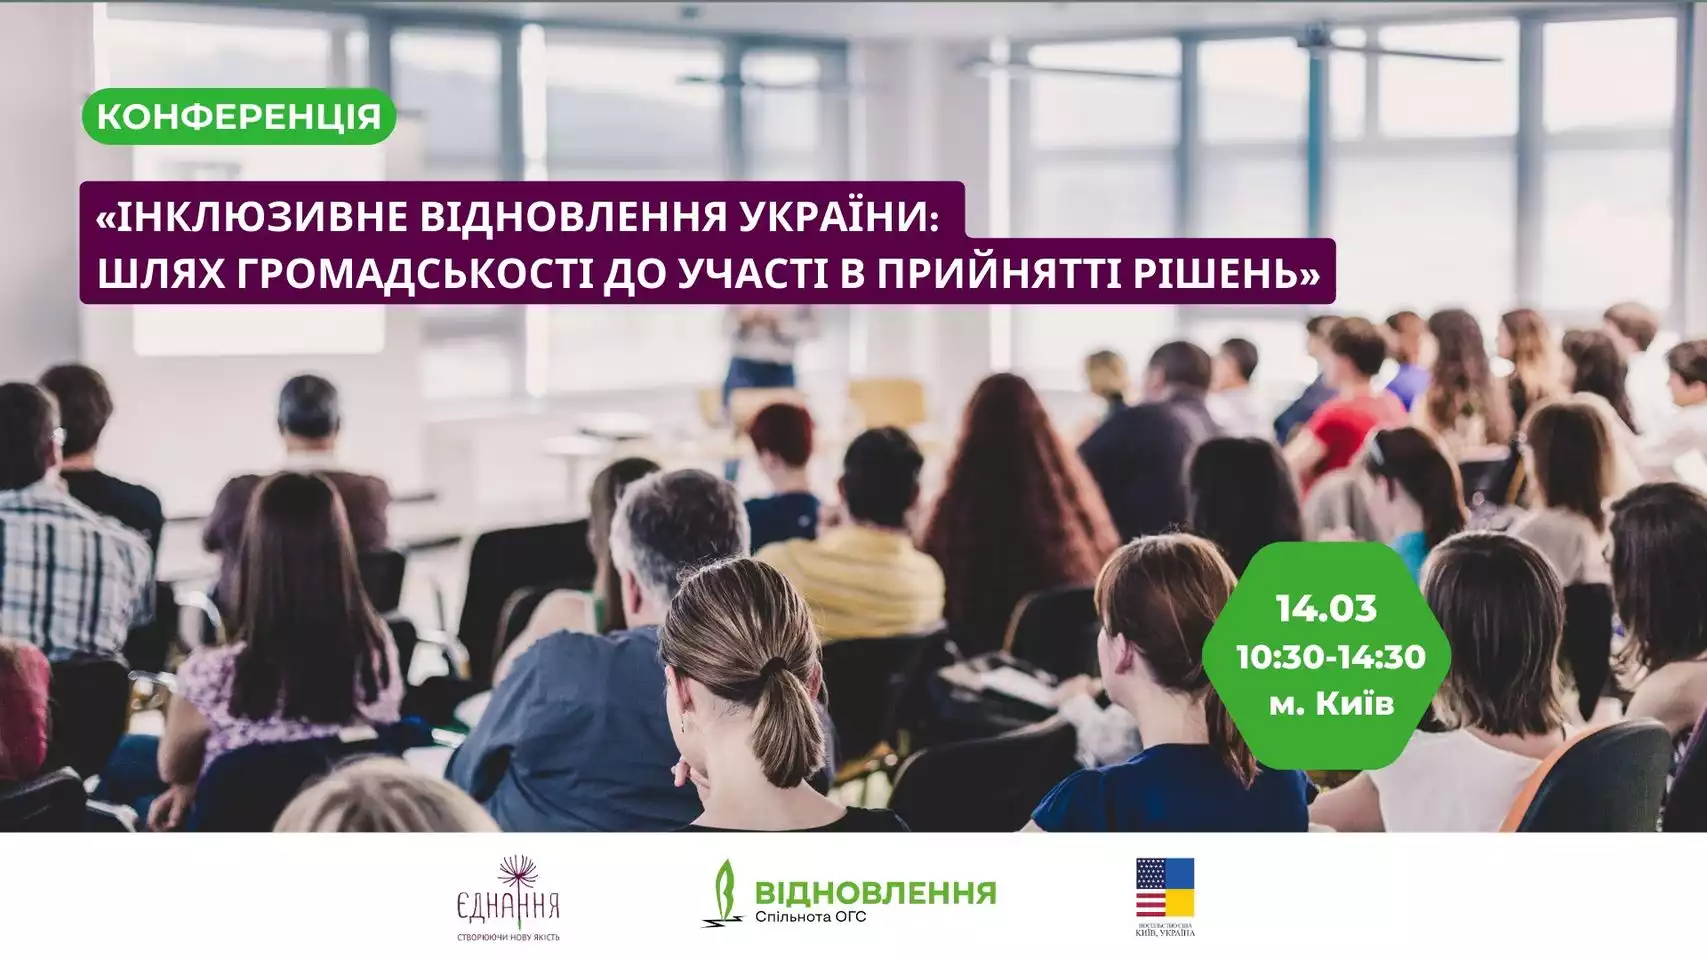 14 березня — конференція «Інклюзивне відновлення України: шлях громадськості до участі в прийнятті рішень»